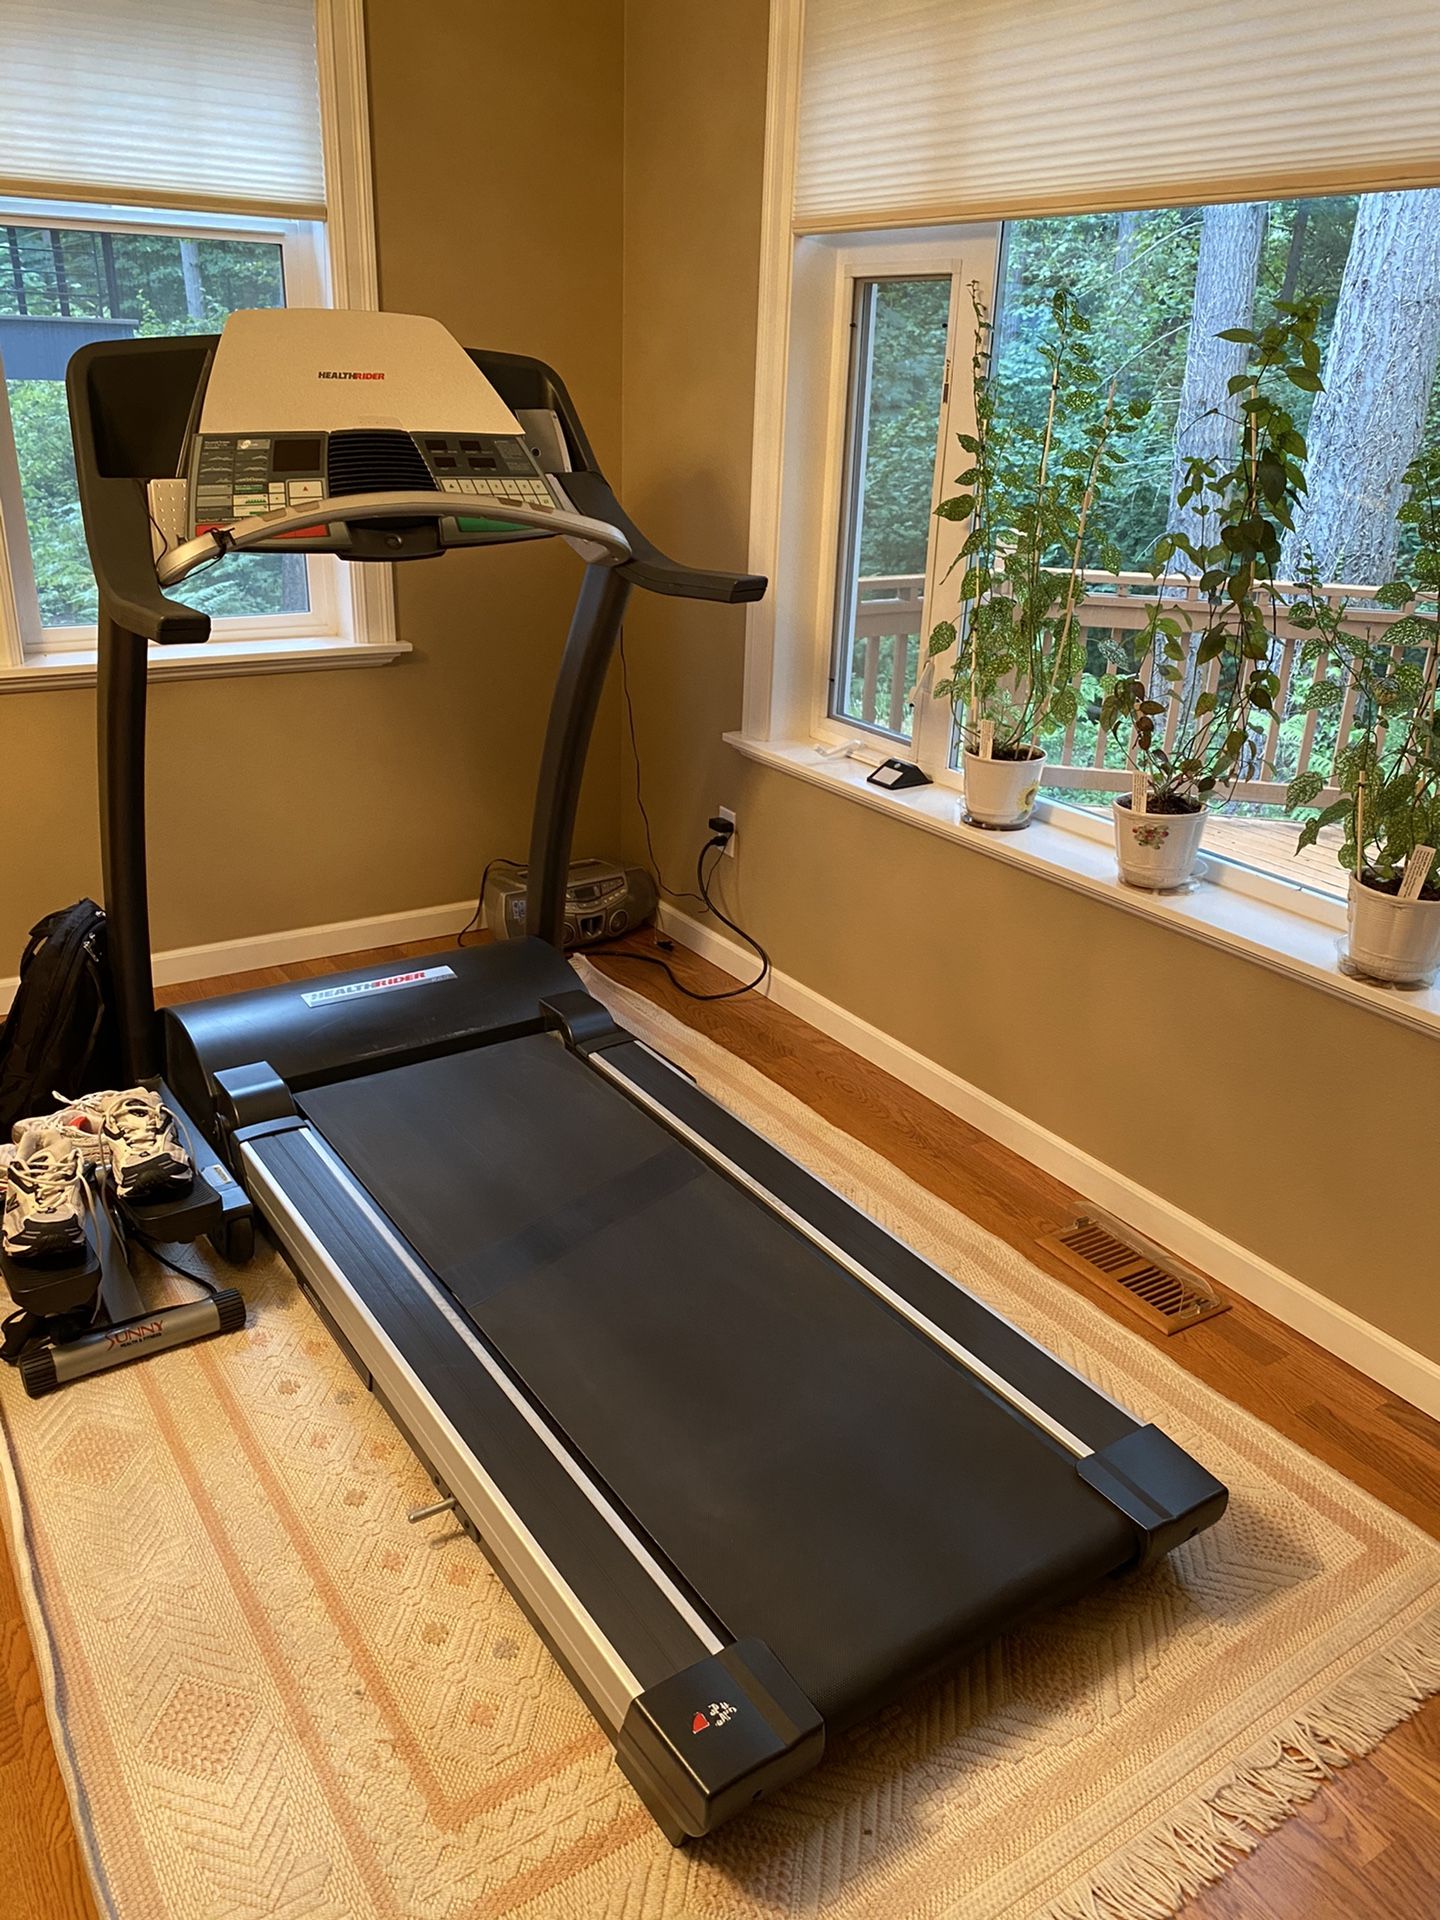 Health rider folding treadmill